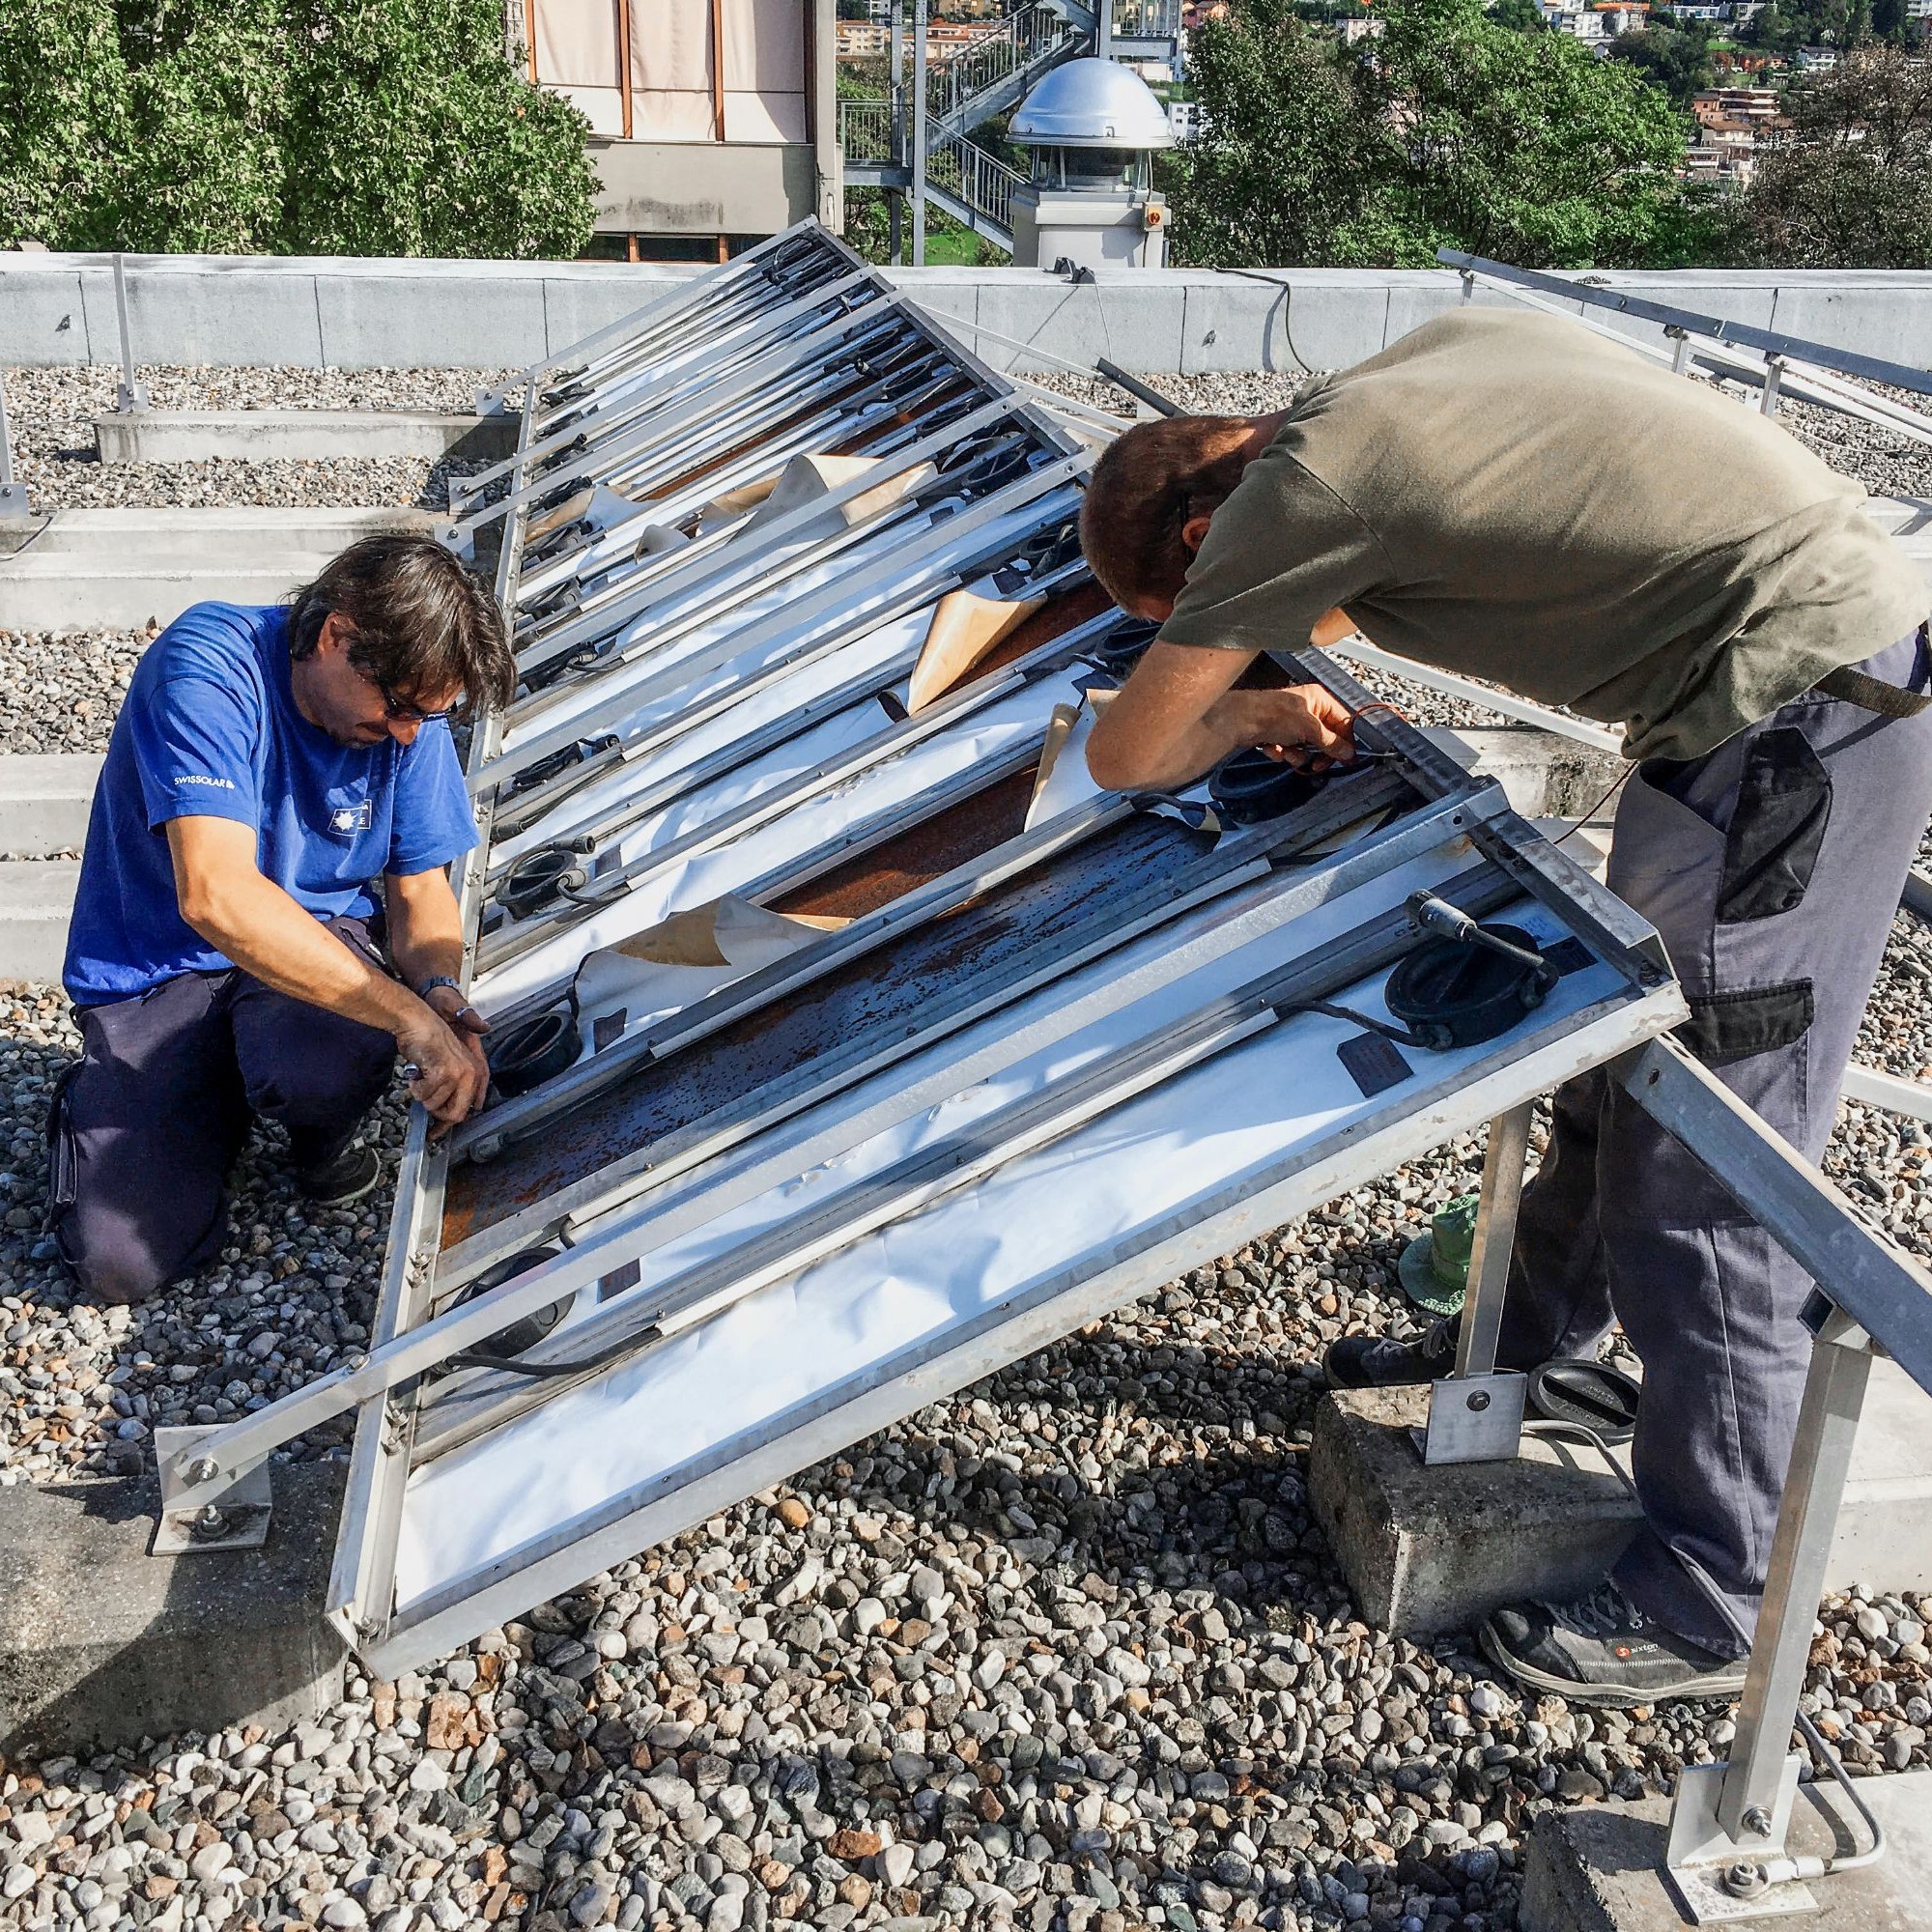 Bis 2017 stand die Photovoltaikanlage Tiso-10 auf dem Dach der Aula Magna der Fachhochschule Südschweiz in Canobbio. Dann wurde sie demontiert, damit Supsi-Forscher den Zustand der Module nach 35 Betriebsjahren untersuchen konnten.